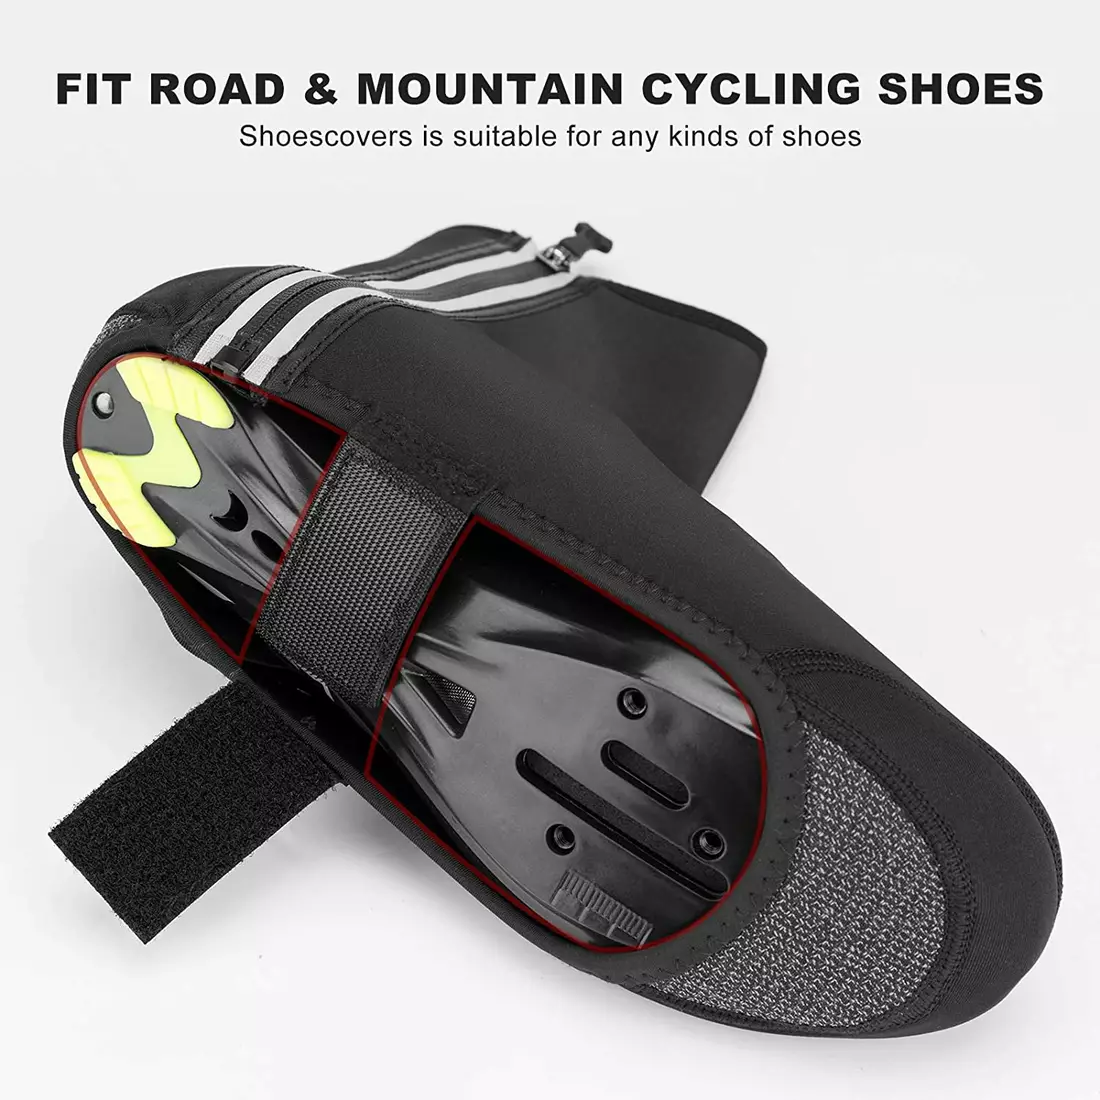 Rockbros nepremokavé chrániče na cyklistickú obuv čierne LF1052-1